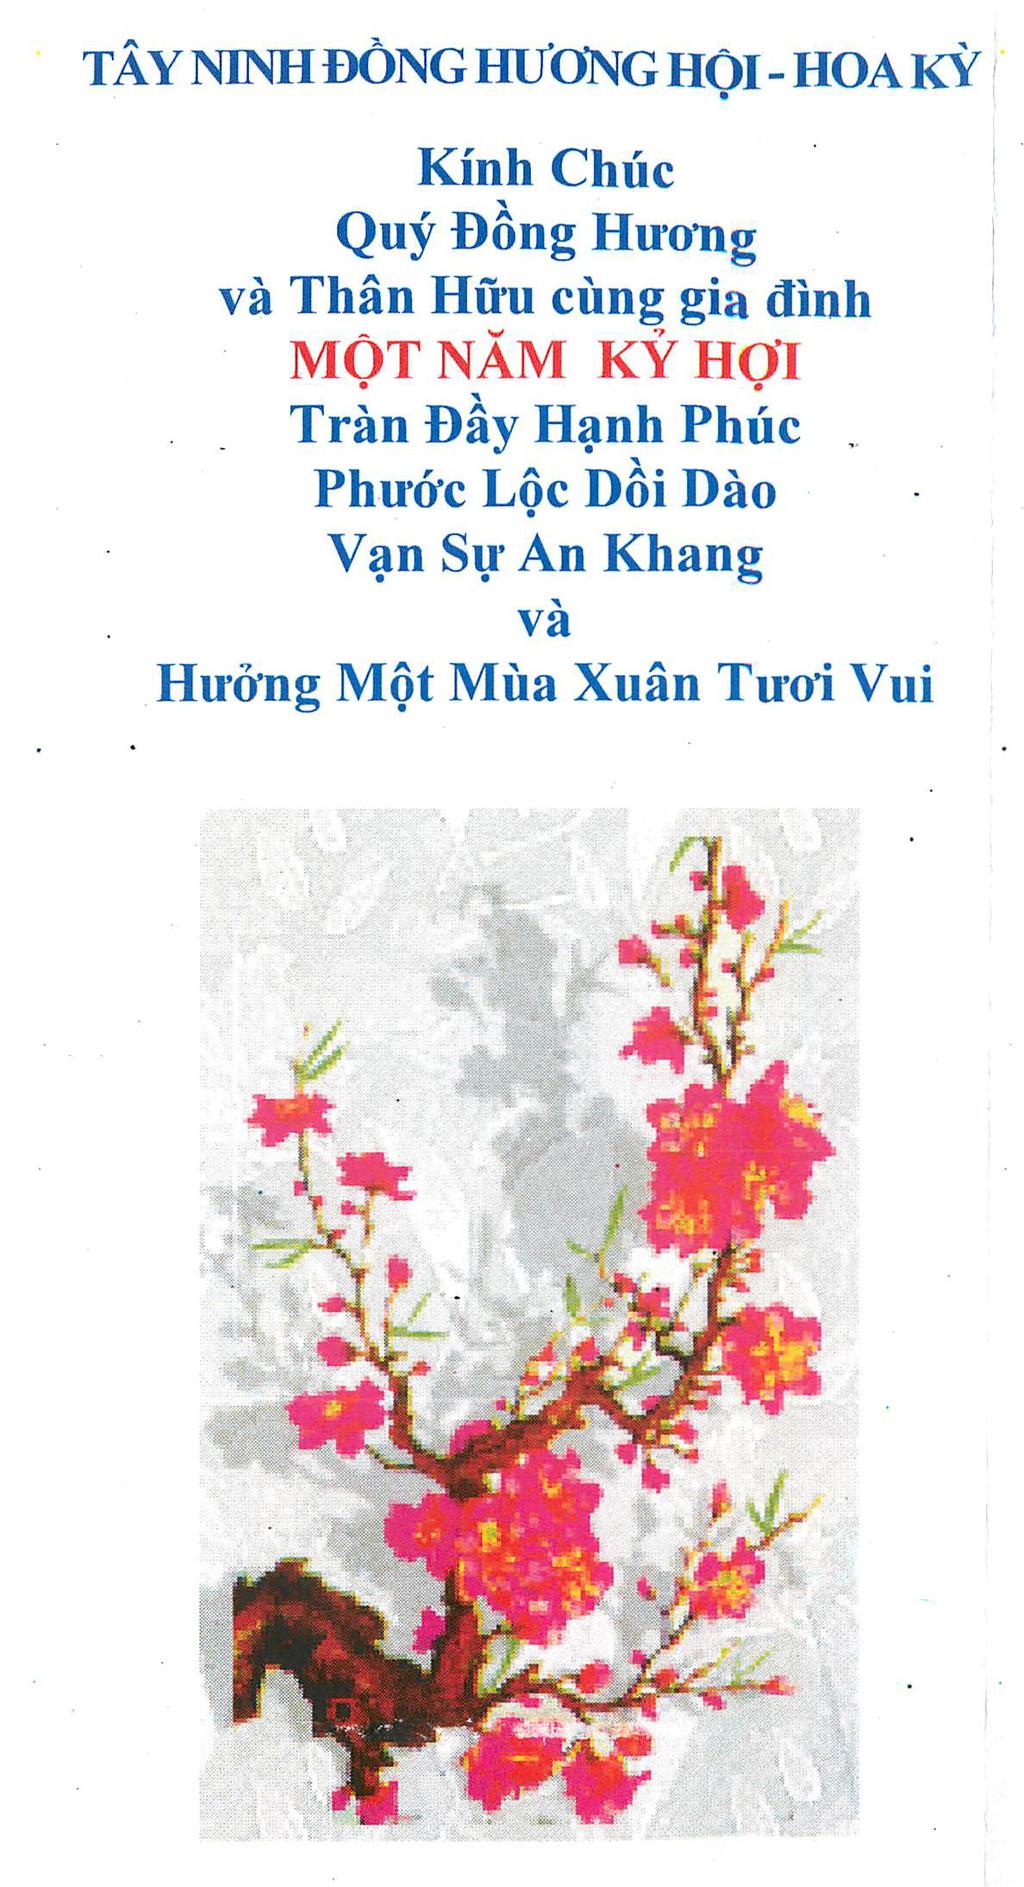 THIỆP MỜI TIỆC TÂN NIÊN KỶ HỢI 2019 của Tây Ninh Đồng